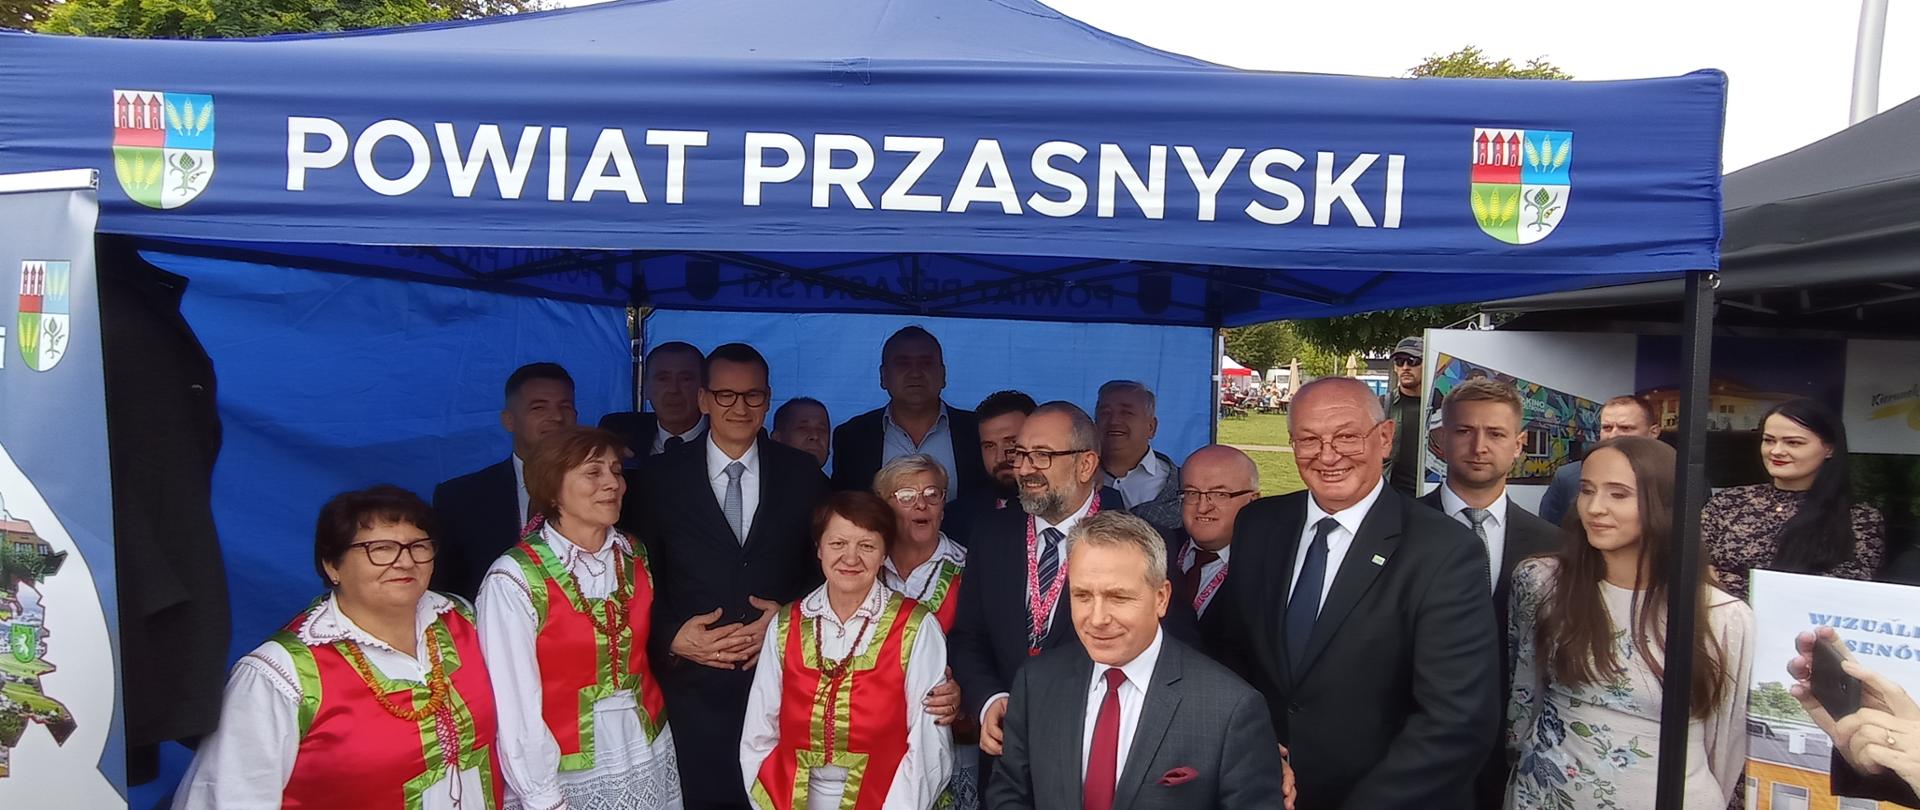 Do stanowiska Powiatu Przasnyskiego zawitał sam Premier Mateusz Morawiecki.